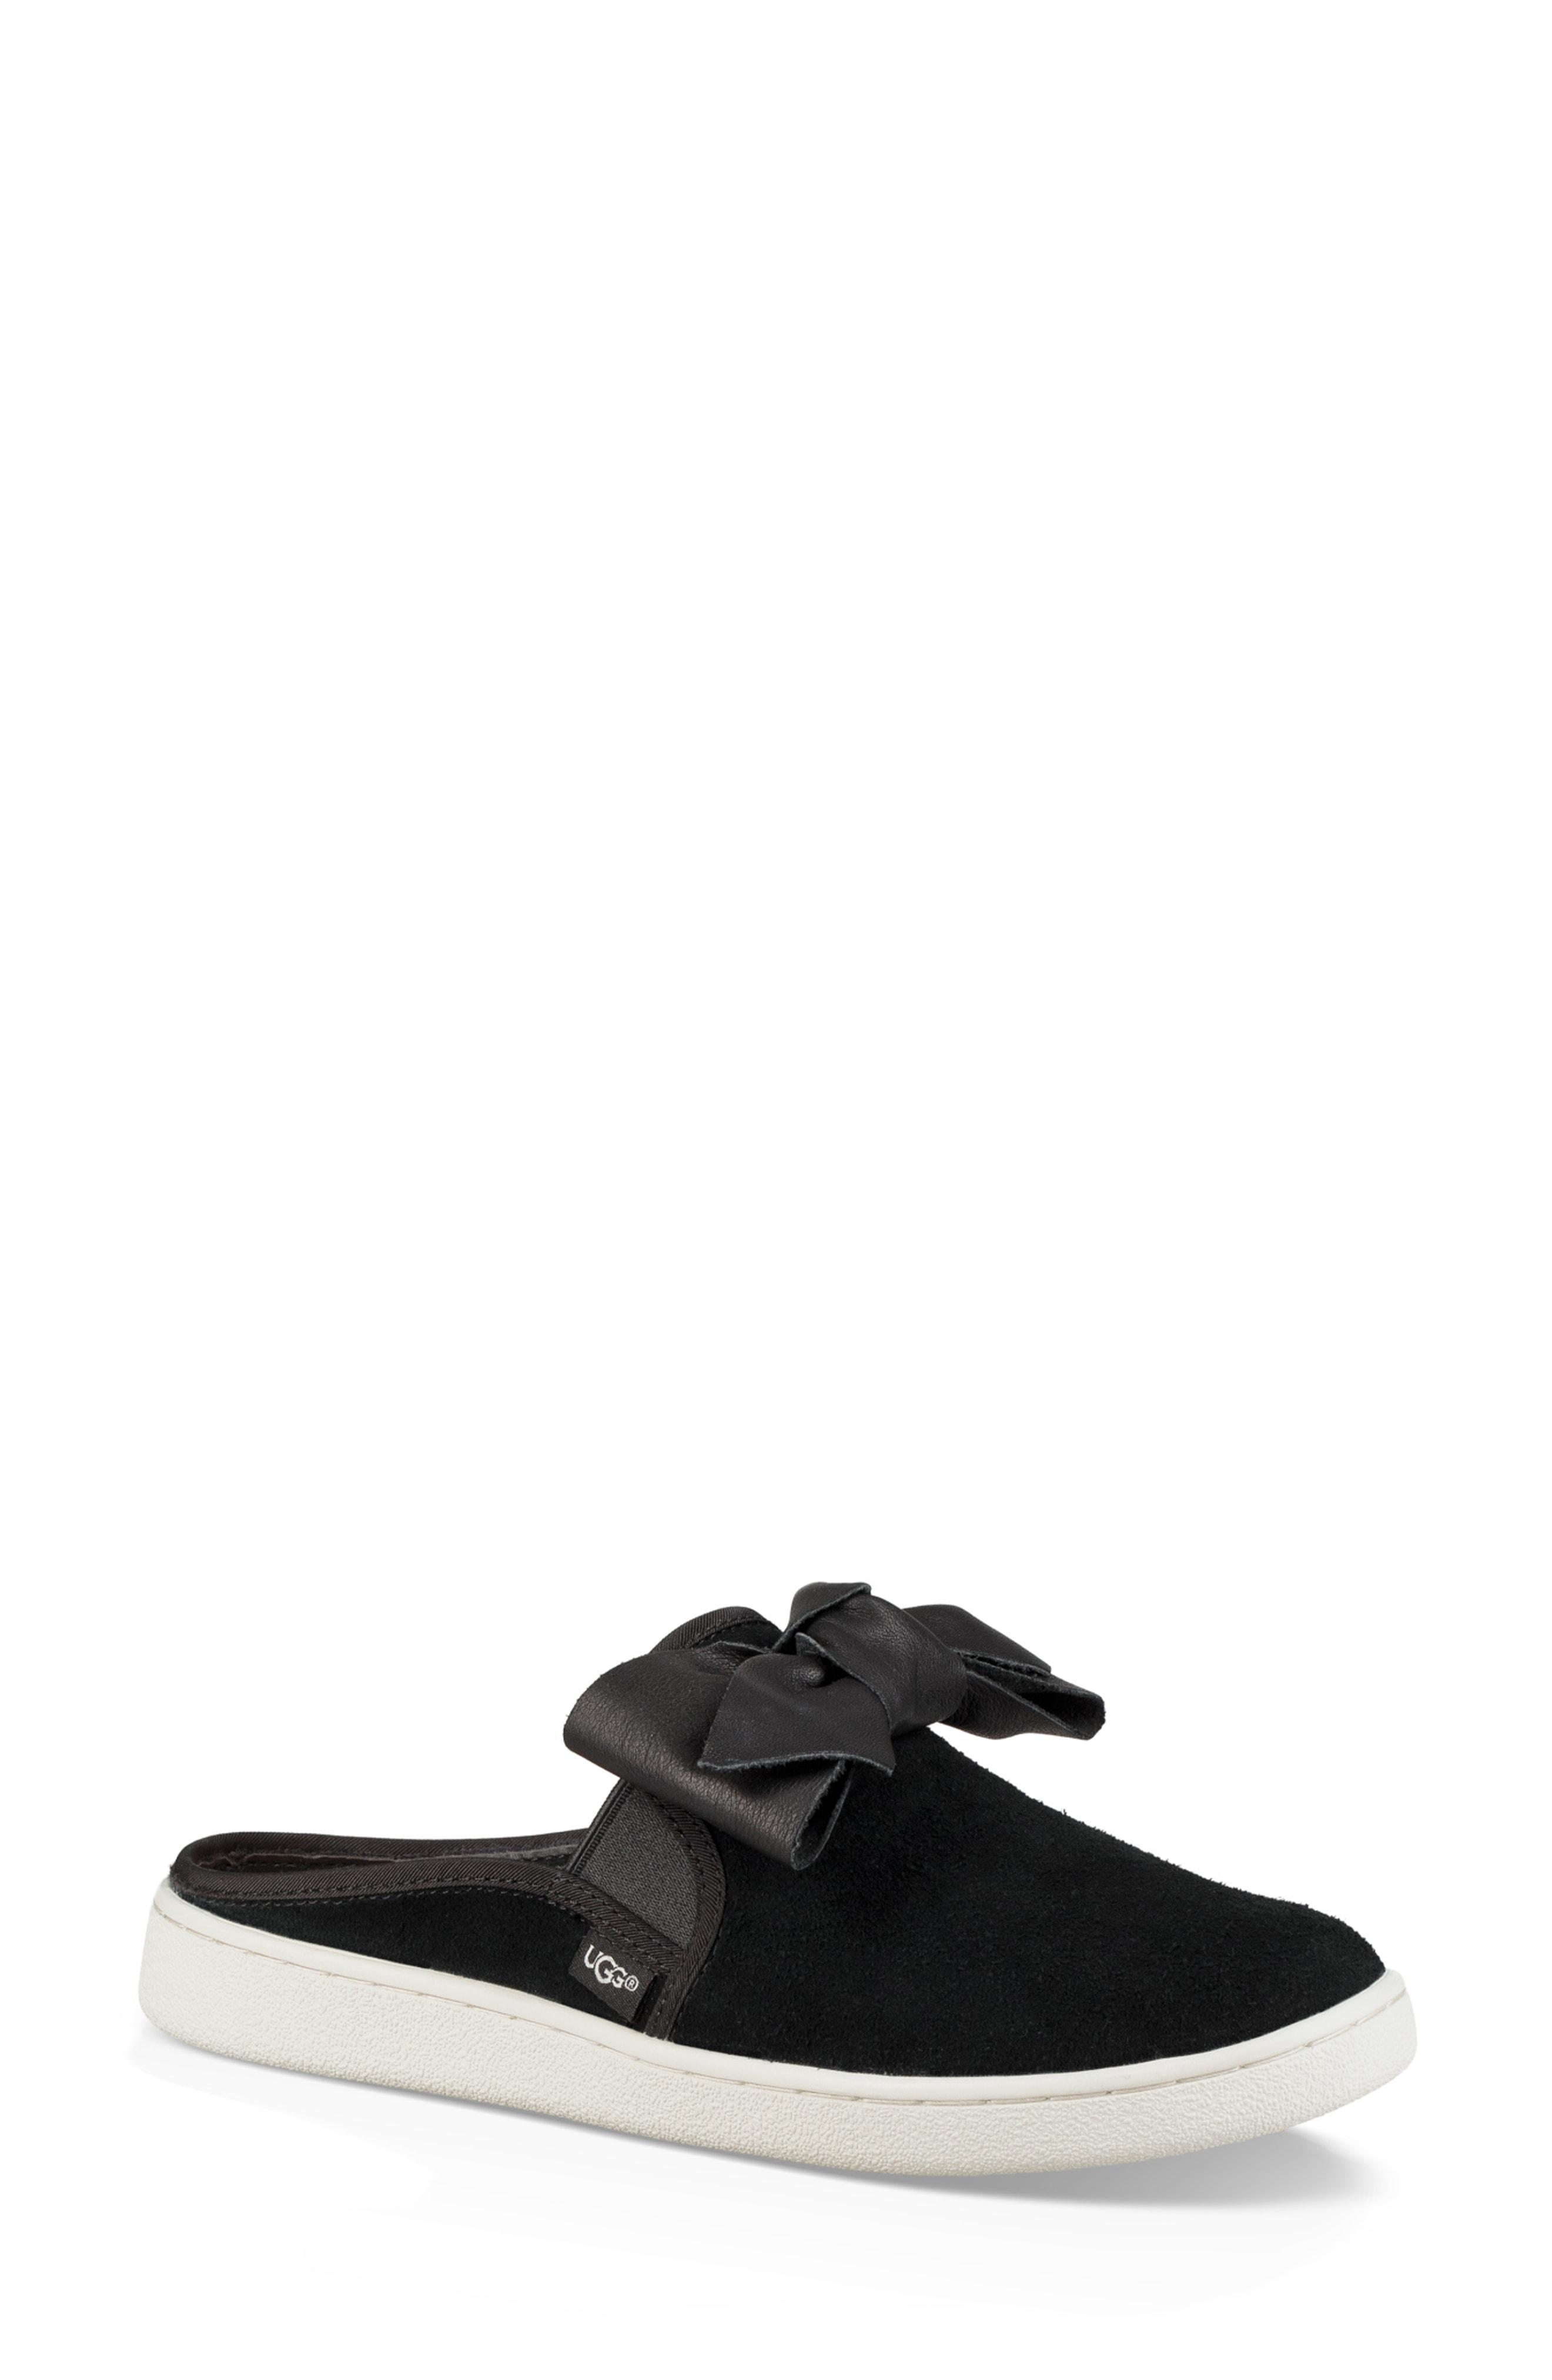 UGG (r) Luci Bow Sneaker Mule in Black | Lyst